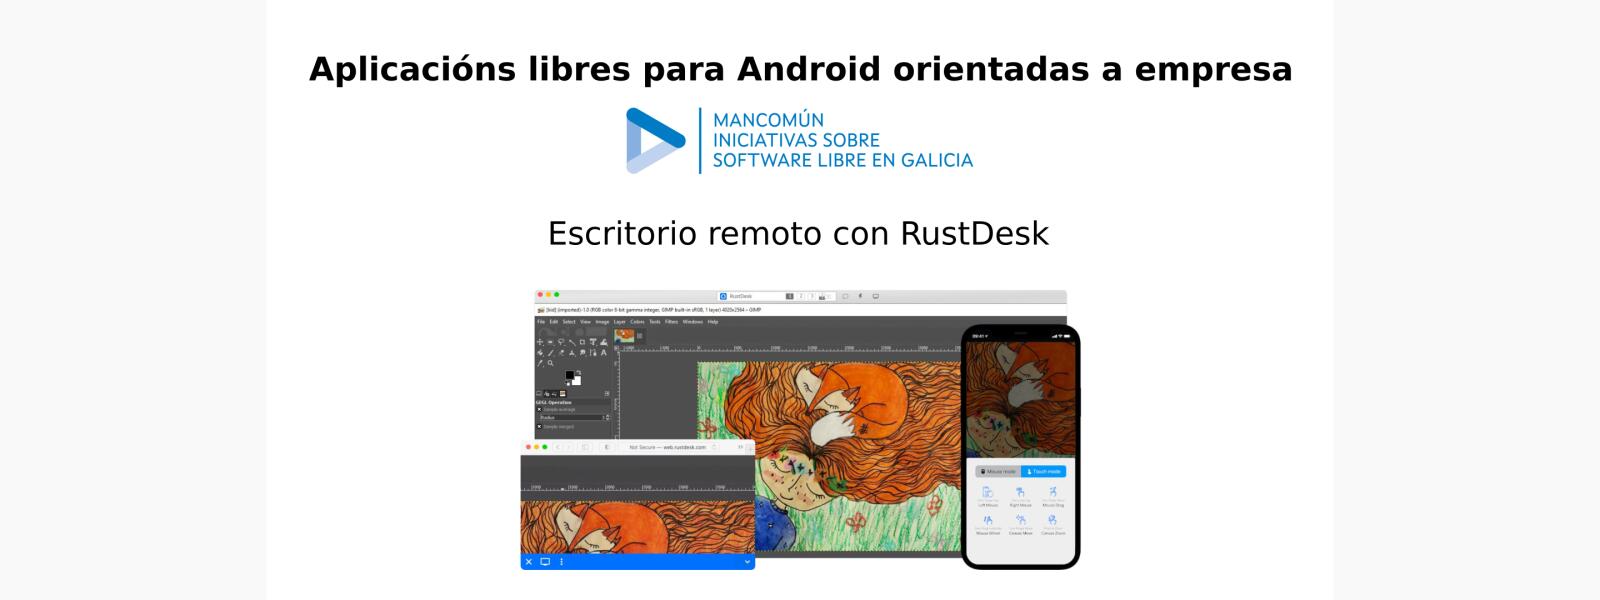 Aplicacións libres para Android orientadas a empresa: Escritorio remoto con RustDesk